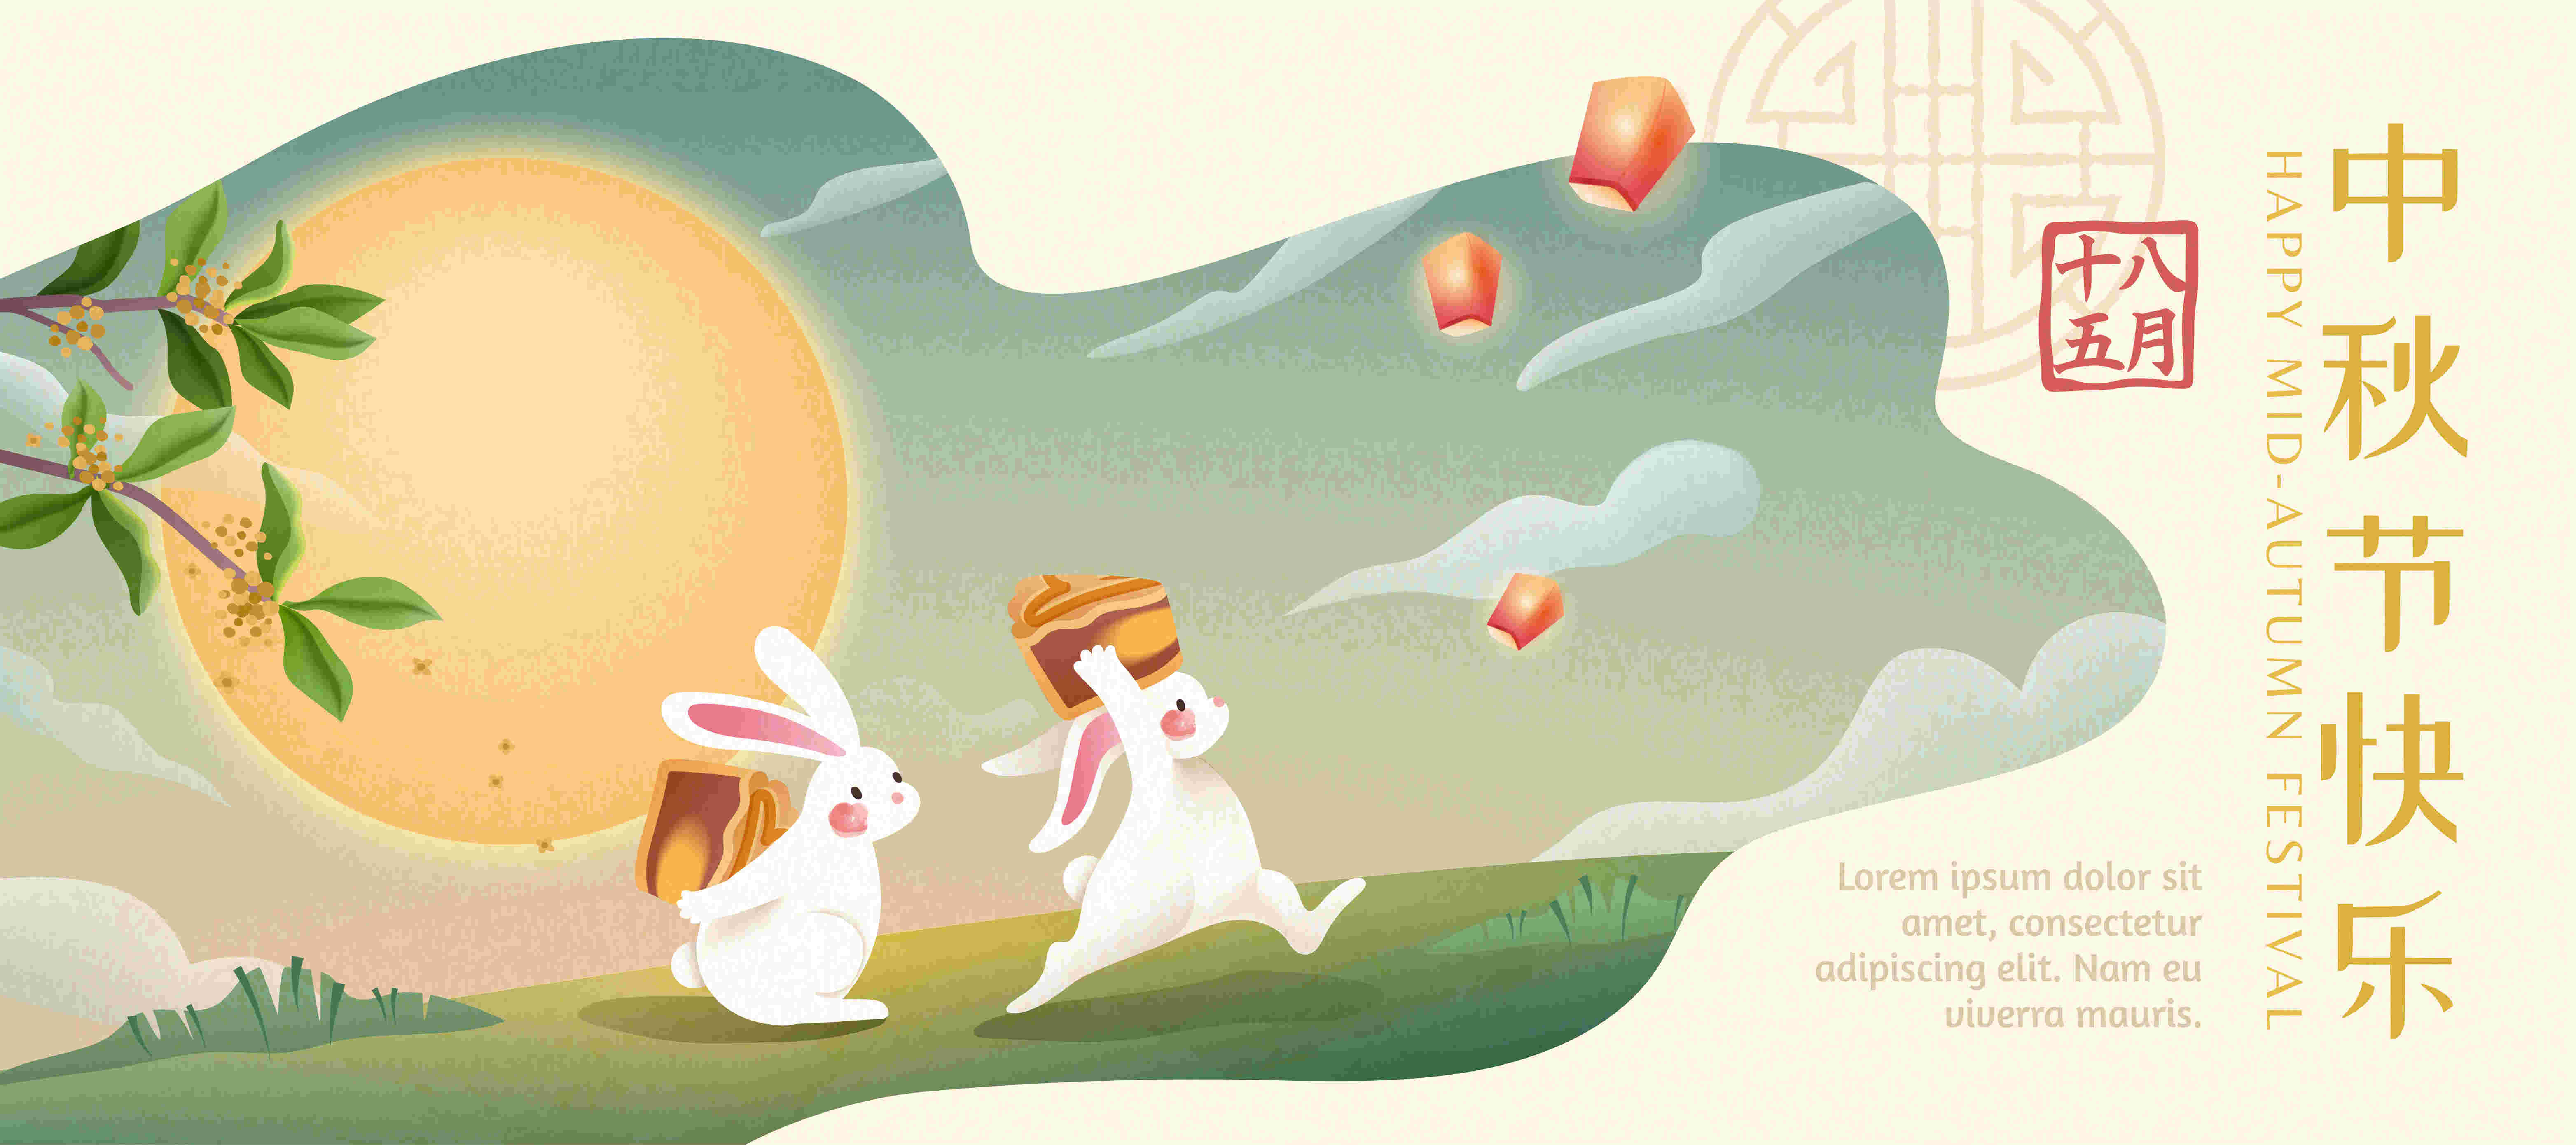 中国传统节日中秋佳节矢量背景海报插图插画设计素材